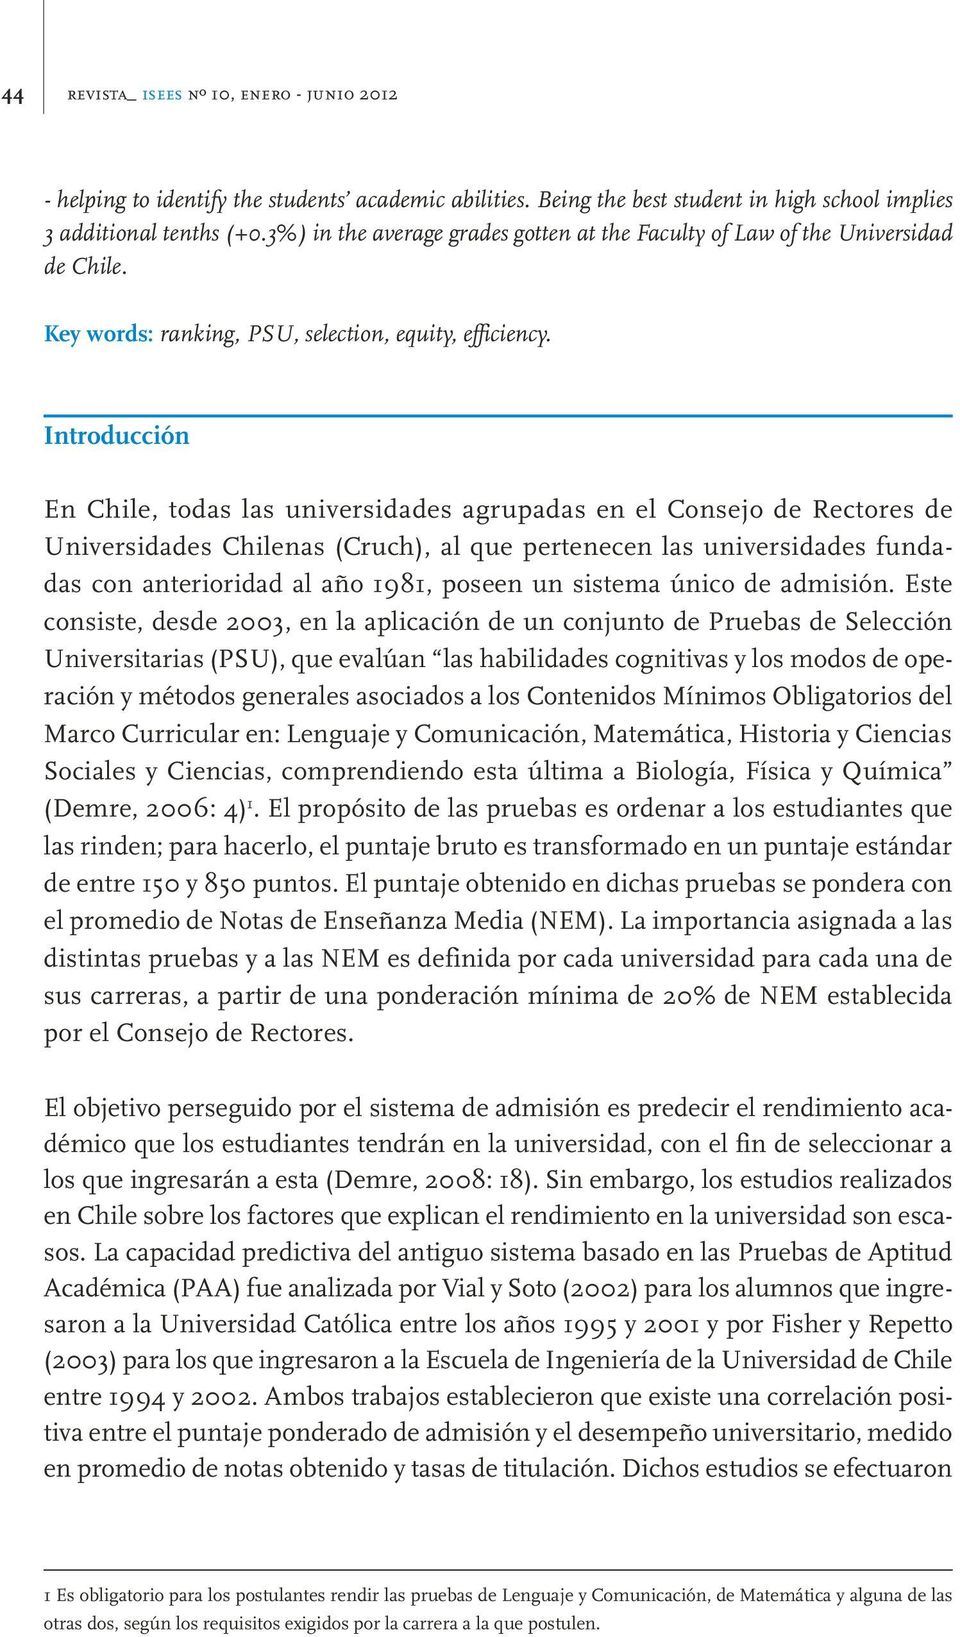 Introducción En Chile, todas las universidades agrupadas en el Consejo de Rectores de Universidades Chilenas (Cruch), al que pertenecen las universidades fundadas con anterioridad al año 1981, poseen